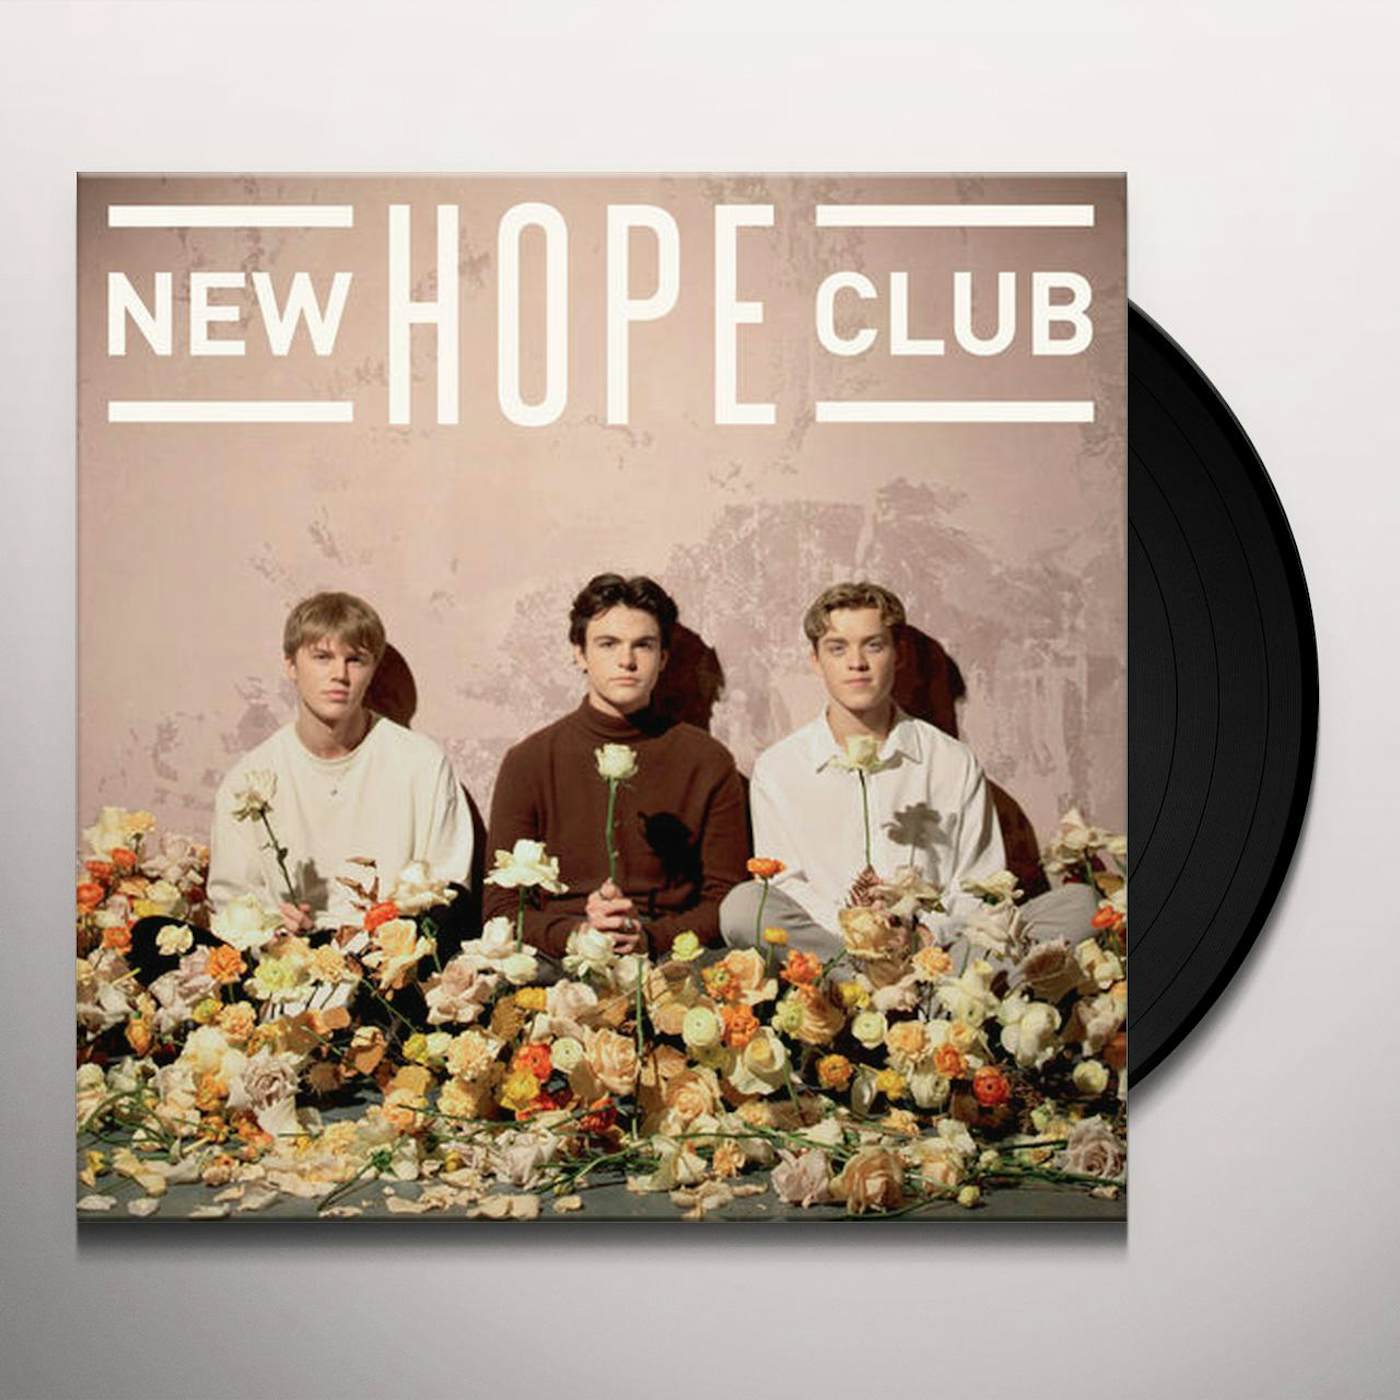 New down one. New hope Club. New hope Club 2022. New hope Club Band. New hope Club give me time.